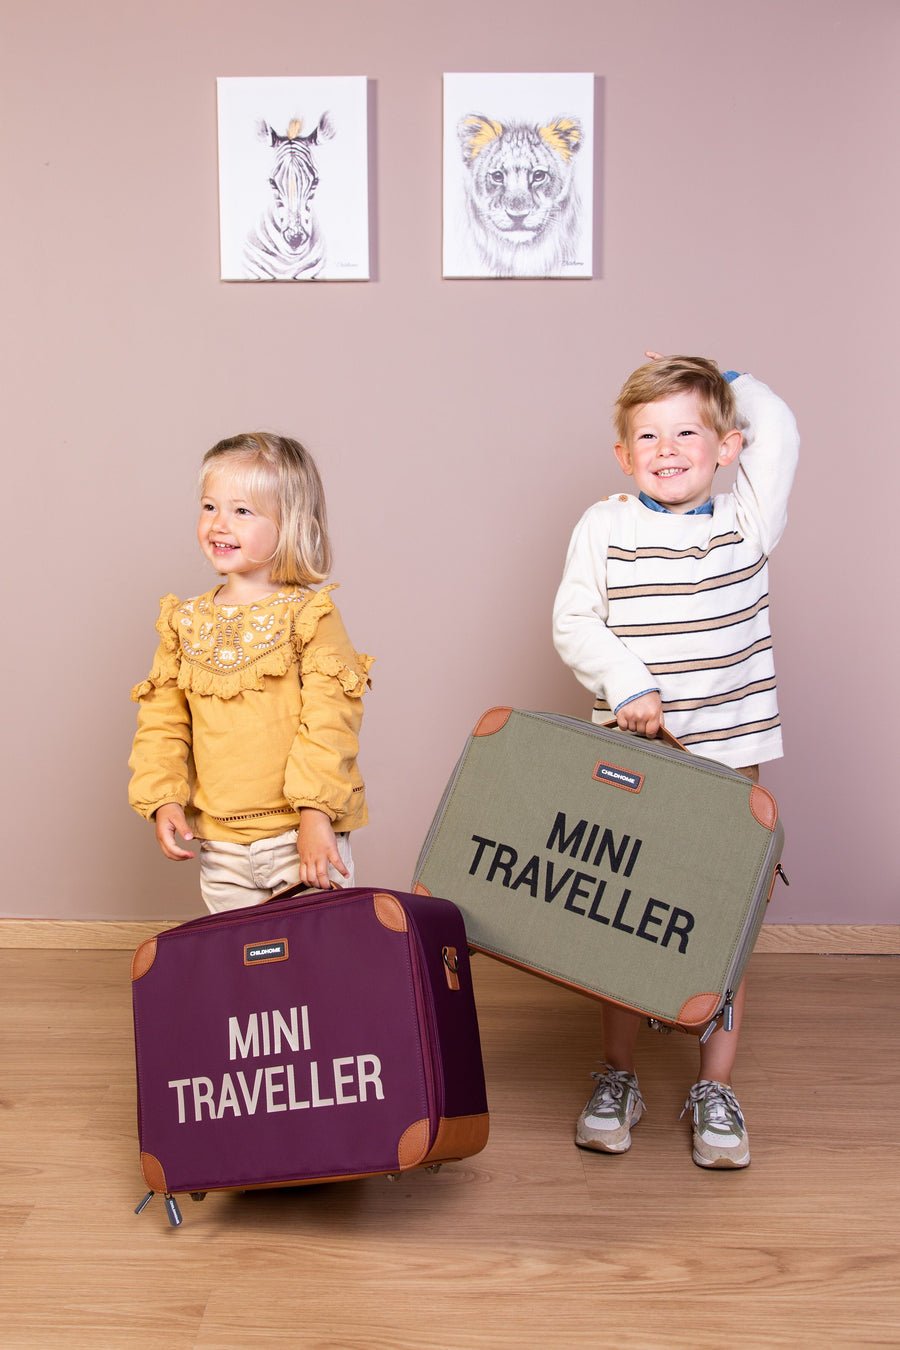 Petite valise mini traveller toile kaki : Childhome